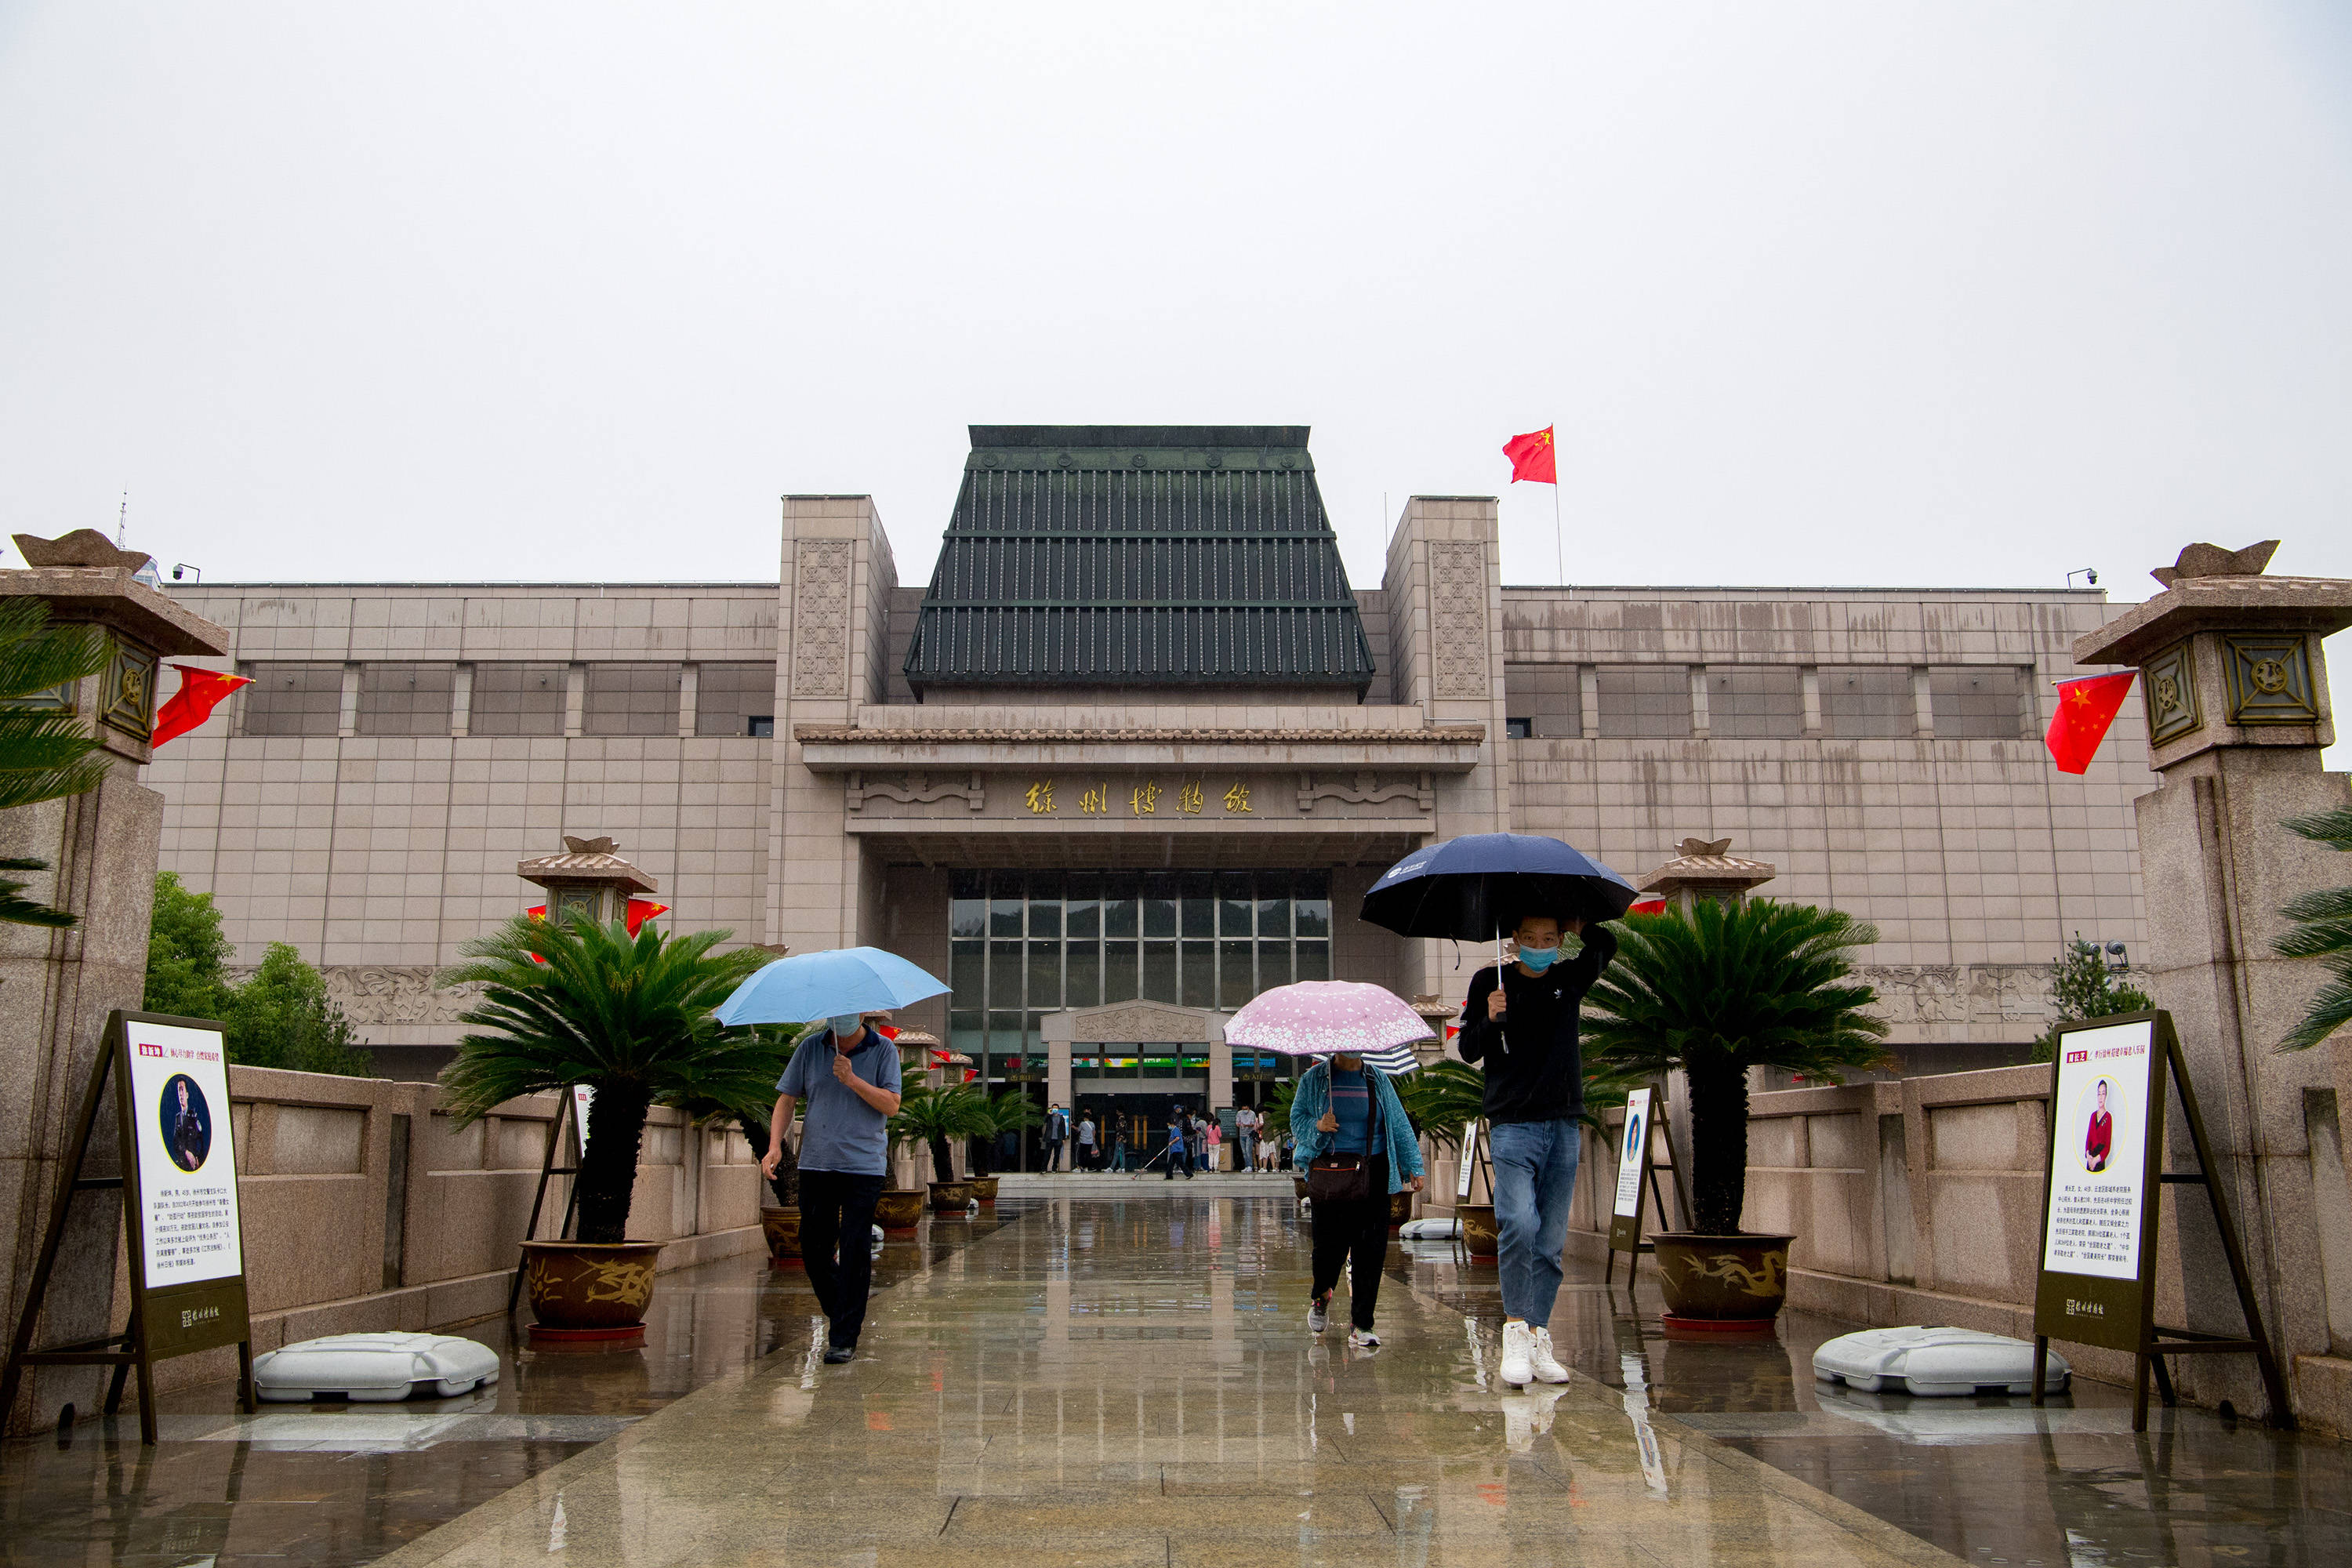 徐州博物馆是地级市少见的国家一级博物馆,也是国家4a级旅游景区,它最